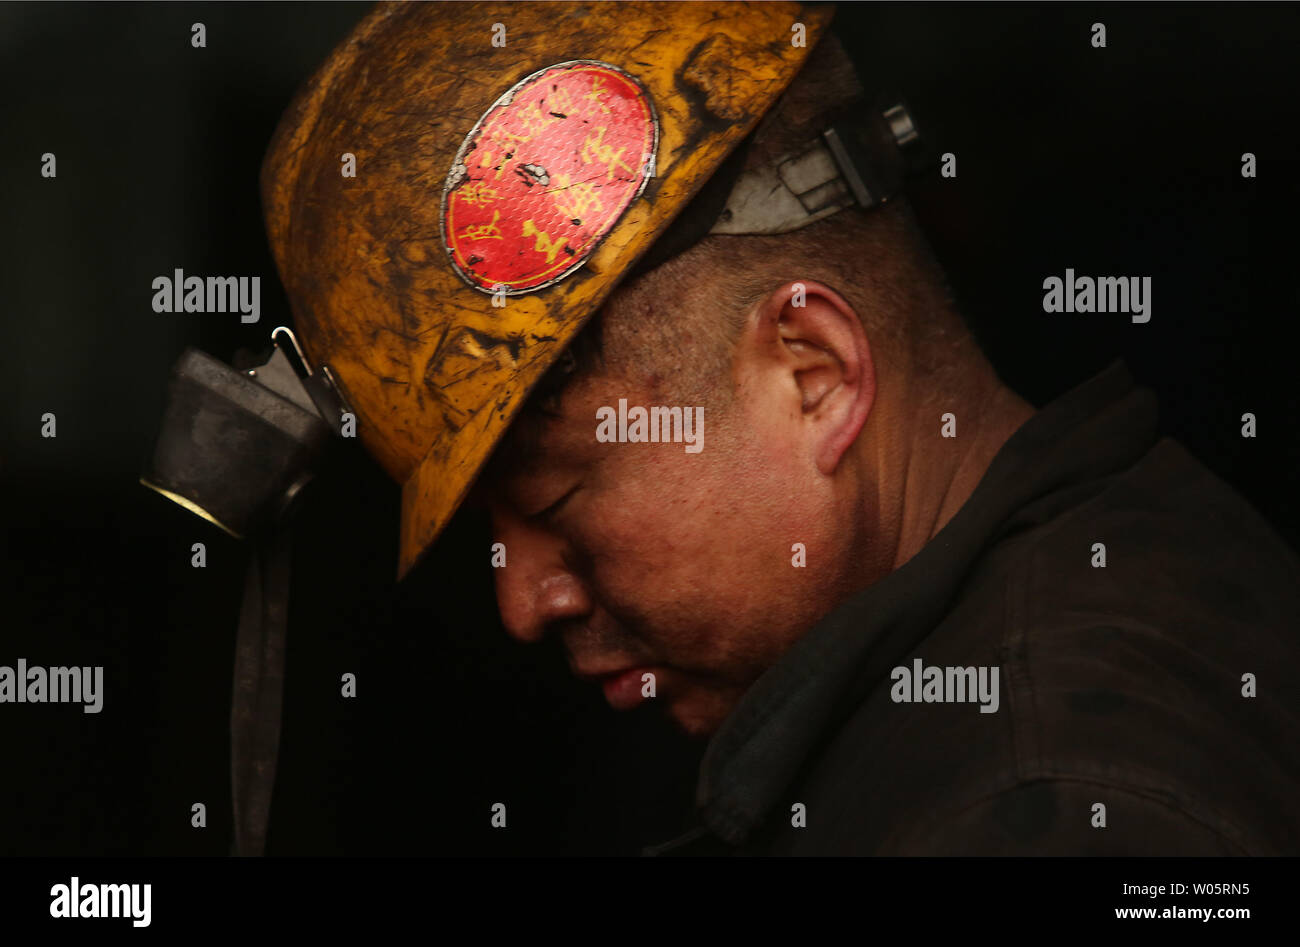 Eine Chinesische coal Miner arbeitet in der Nähe von einem Tunnel in Datong, Provinz Shanxi (China Kohle Land), am 12. Dezember 2018. China ist der größte Produzent und Verbraucher von Kohle in der Welt und ist damit der führende Verursacher von Treibhausgasen aus Kohle. China brennt viel mehr Kohle als berichtet, das seither in der Klimapolitik zu erschweren. Foto von Stephen Rasierer/UPI.. Stockfoto